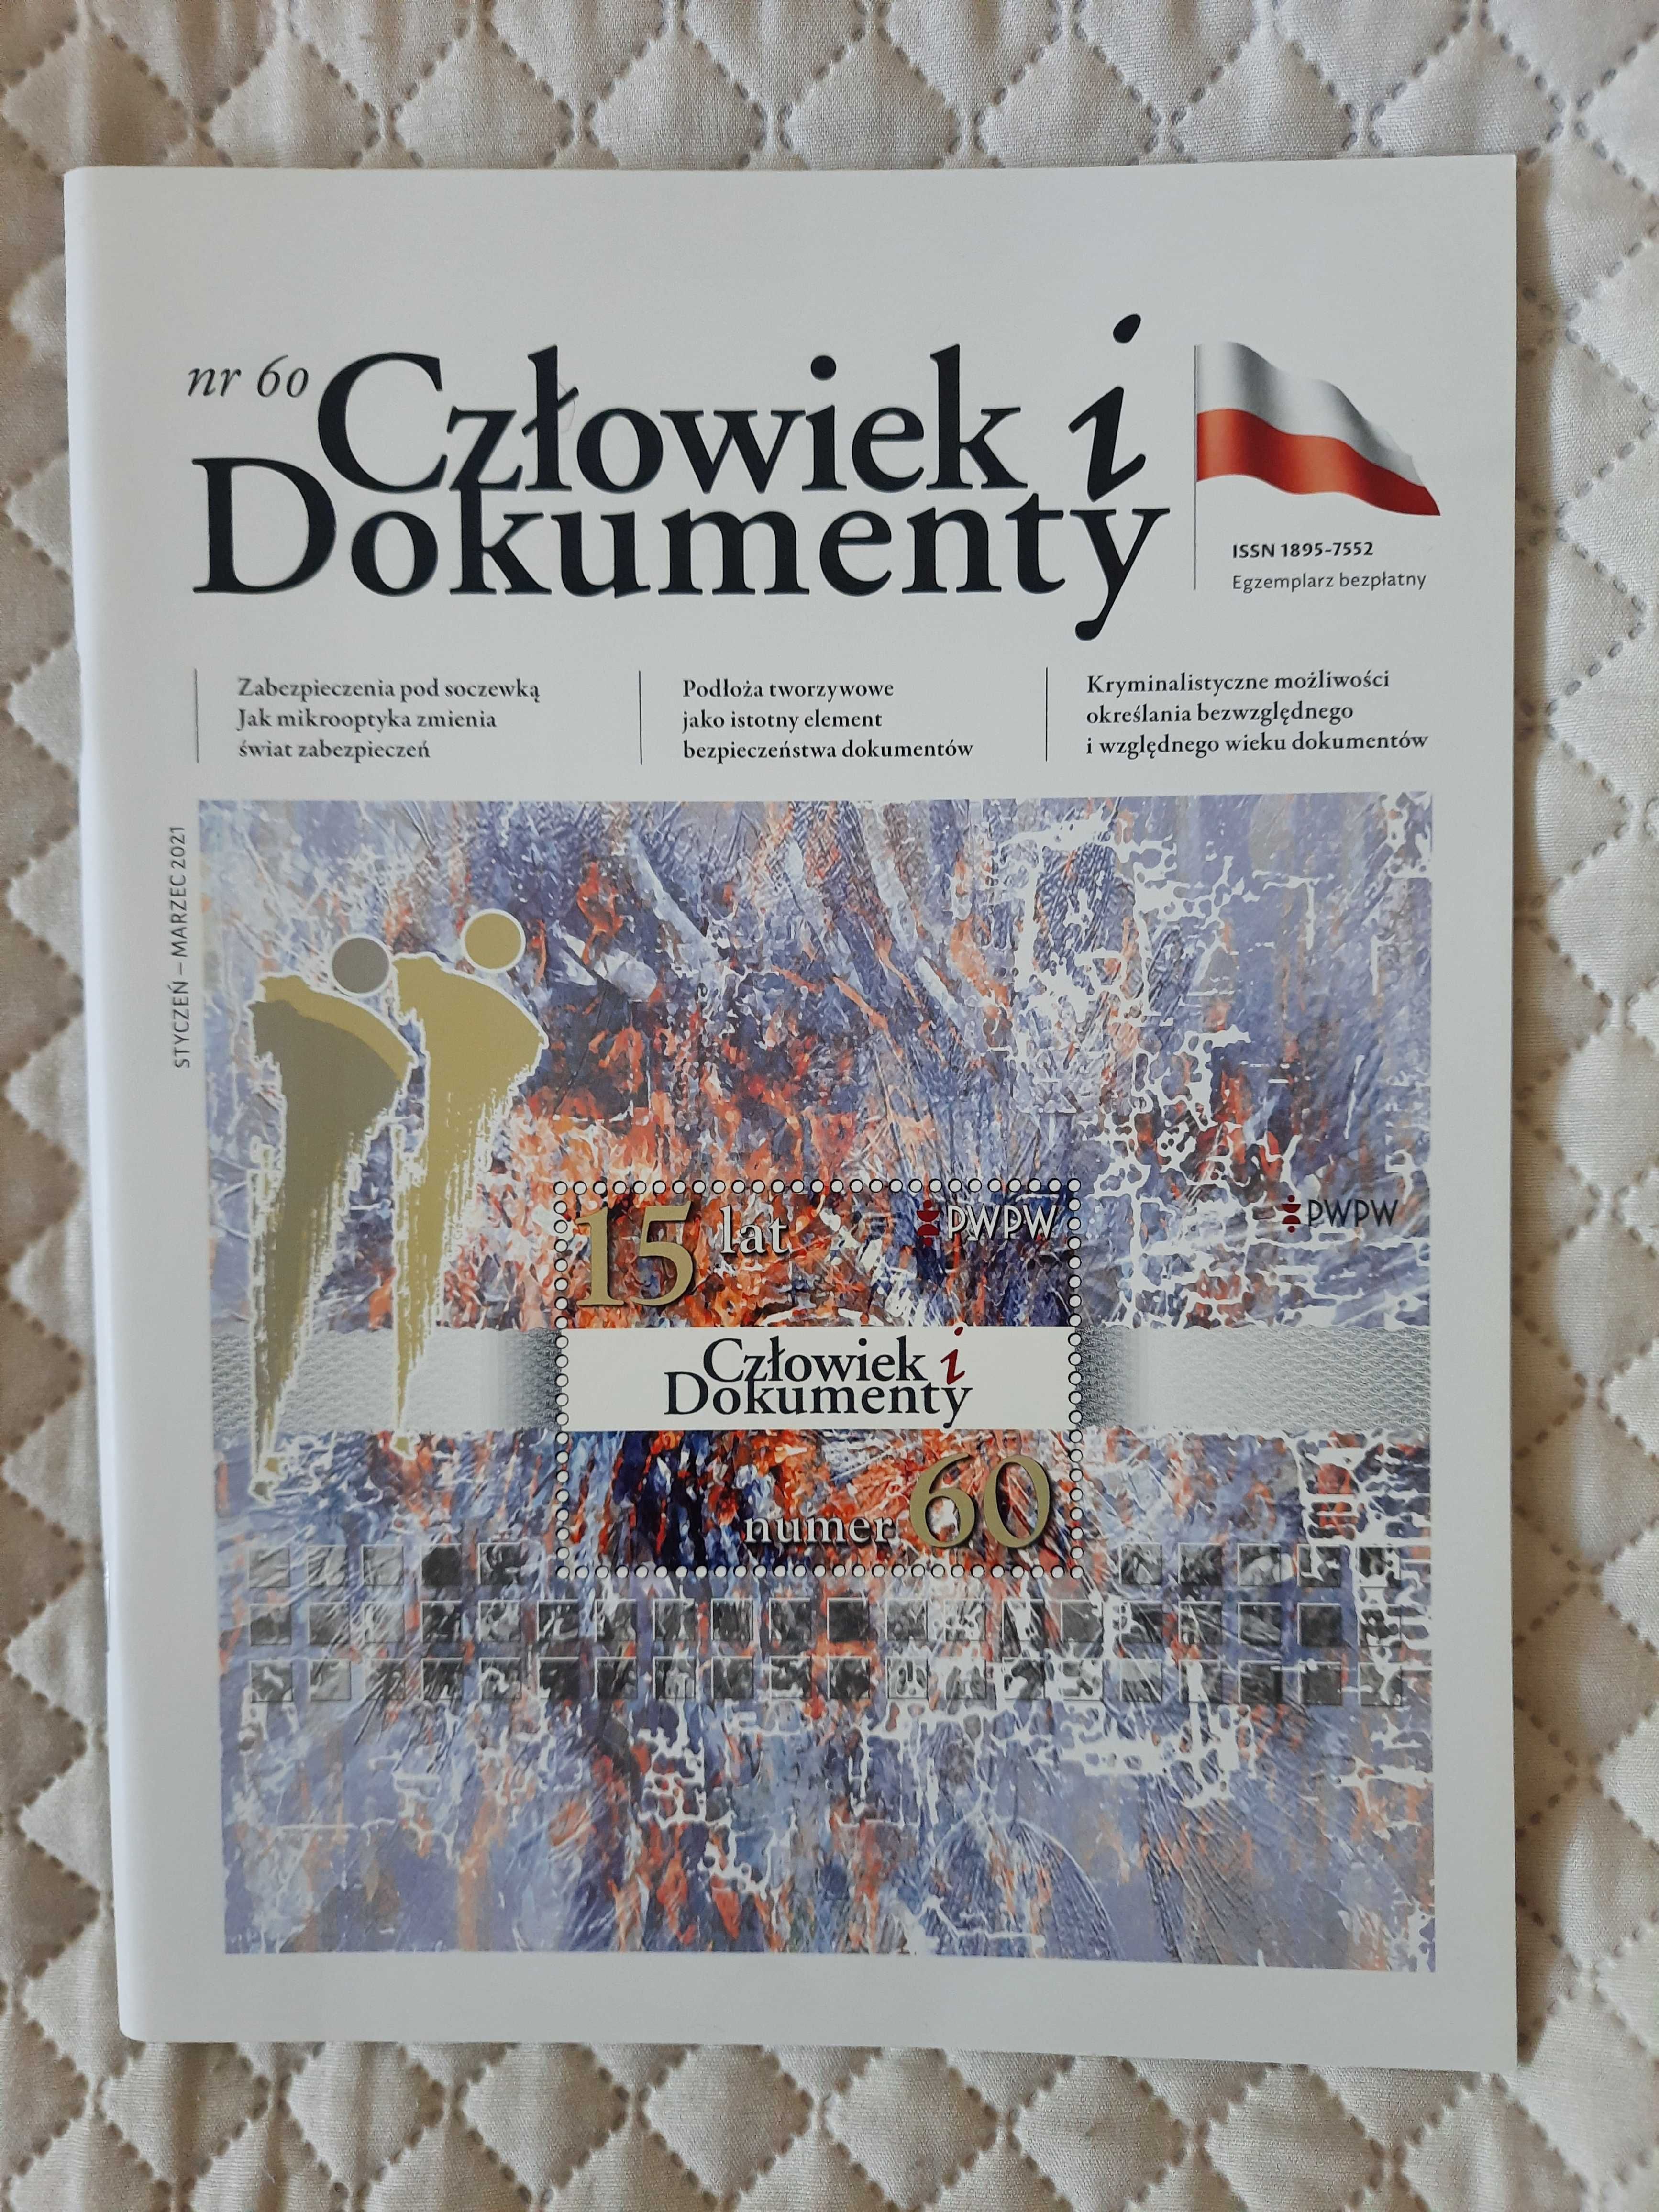 PWPW Człowiek i dokumenty znak wodny Wyszyński